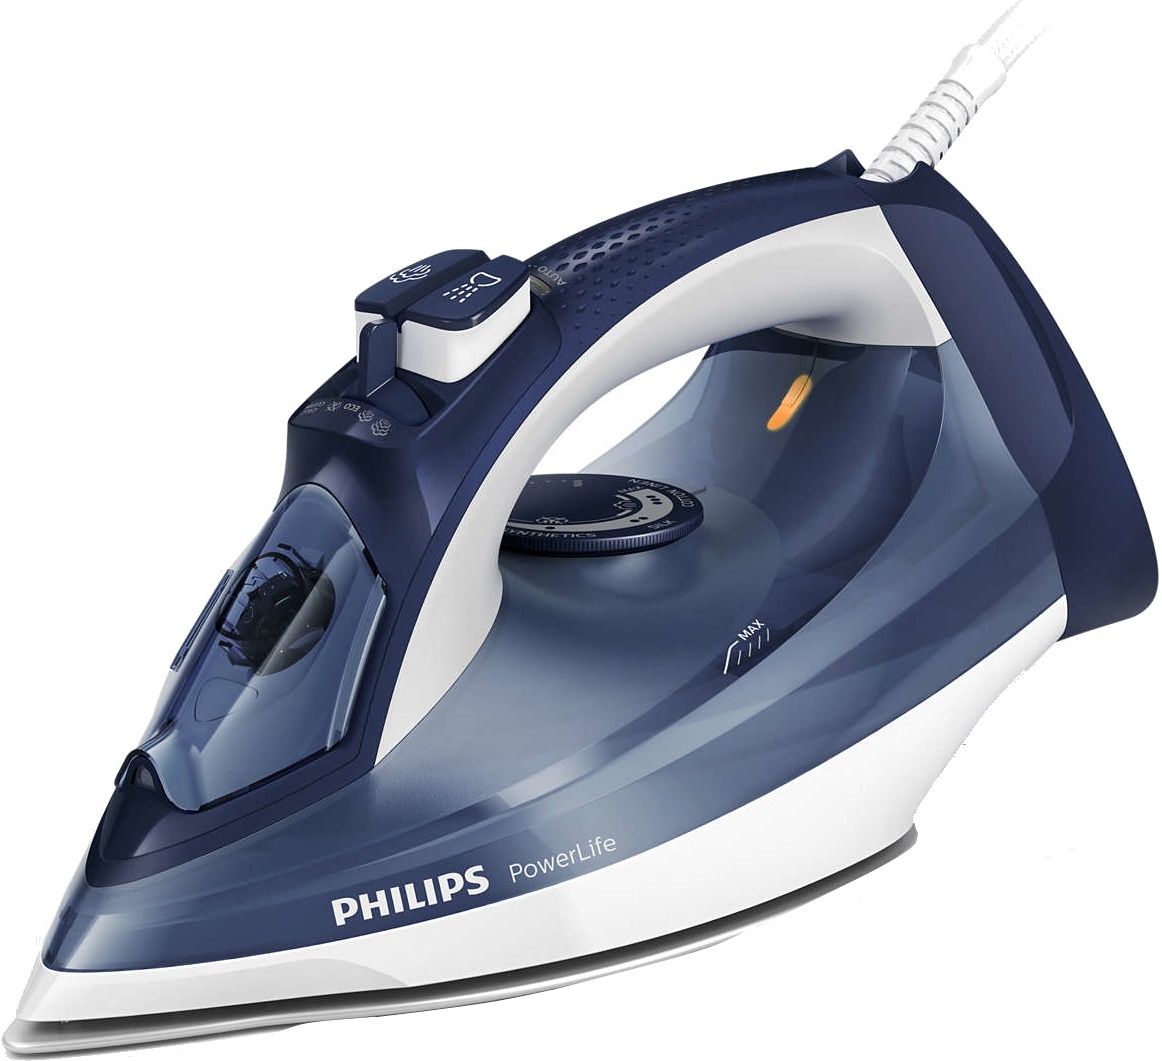 Philips gc3925 30. Утюг Philips gc2995/30 POWERLIFE. Утюг Philips GC 2997. Утюги Philips GC 2997/40. Утюг Philips gc2996/20 POWERLIFE.